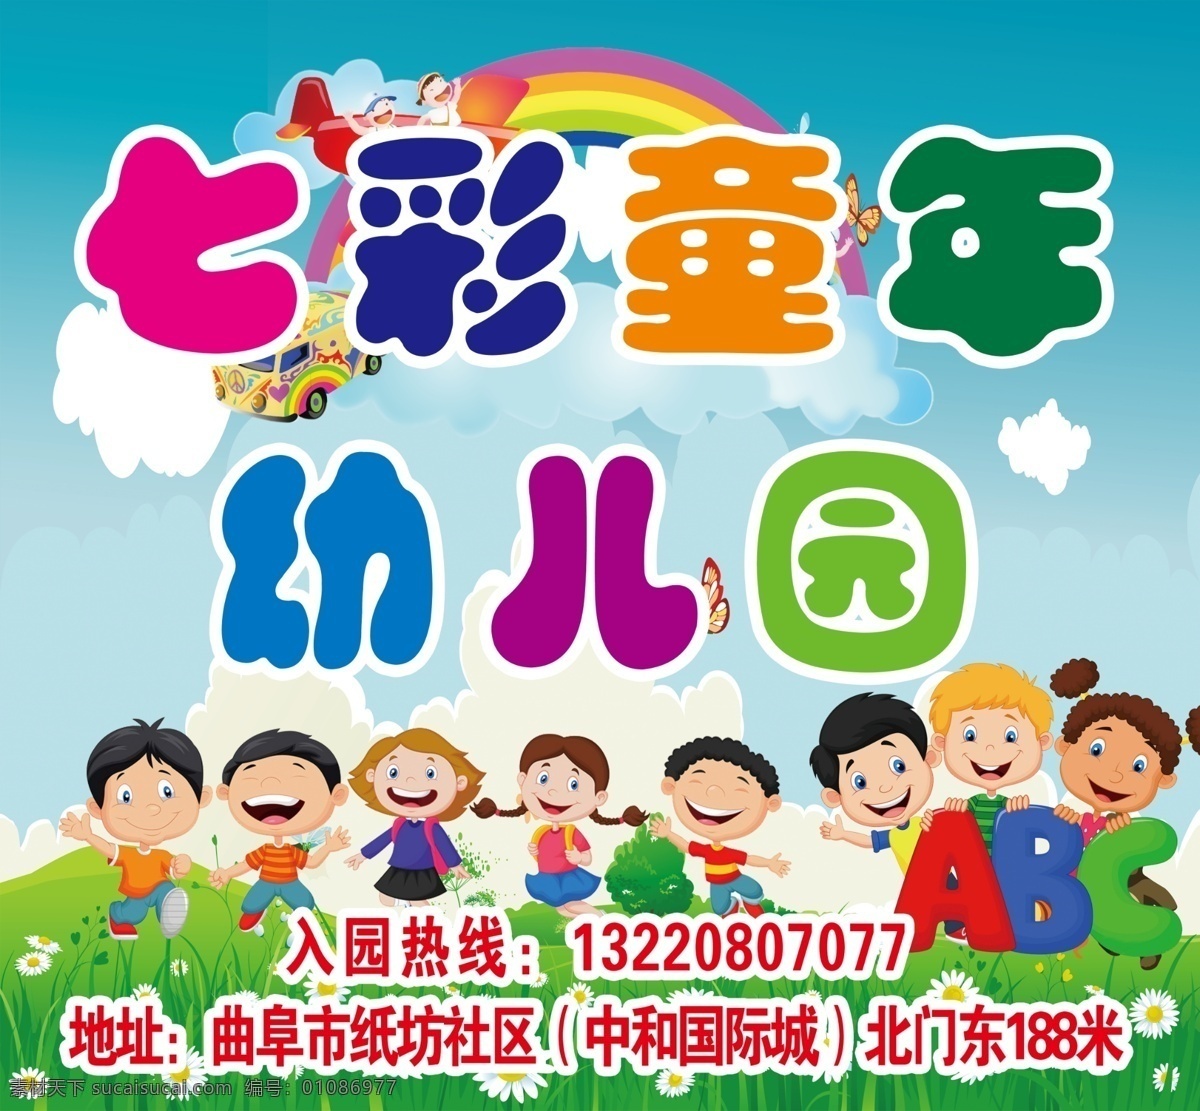 幼儿园广告 幼儿园宣传 彩虹 儿童 卡通小孩 企业类